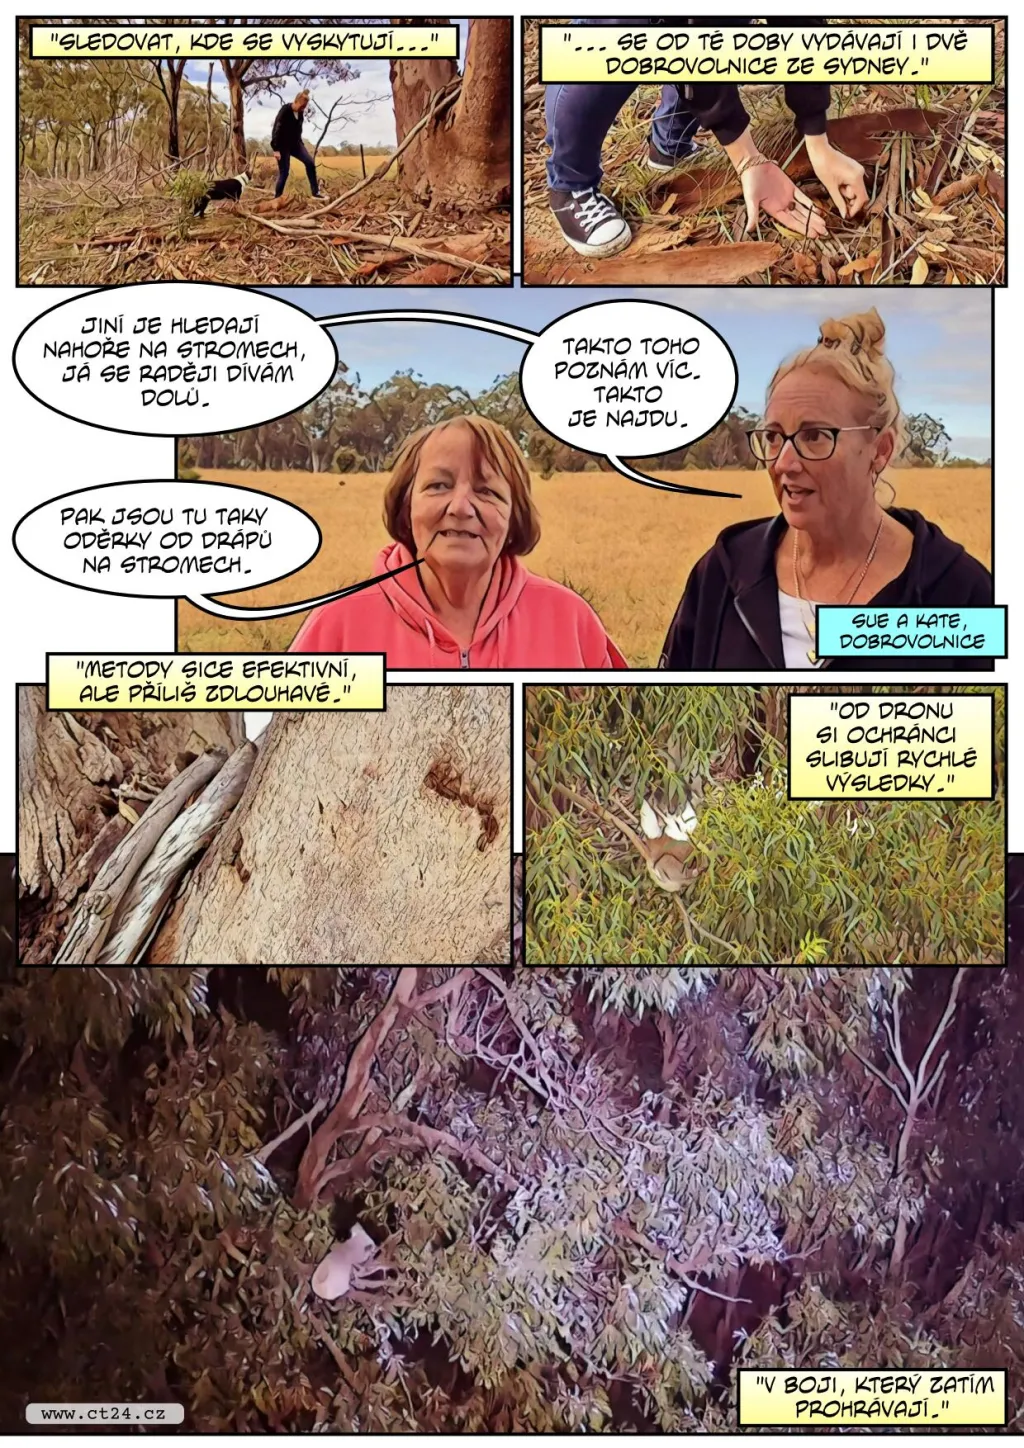 V Austrálii pomáhají se záchranou vymírající populace koalů drony s termovizí